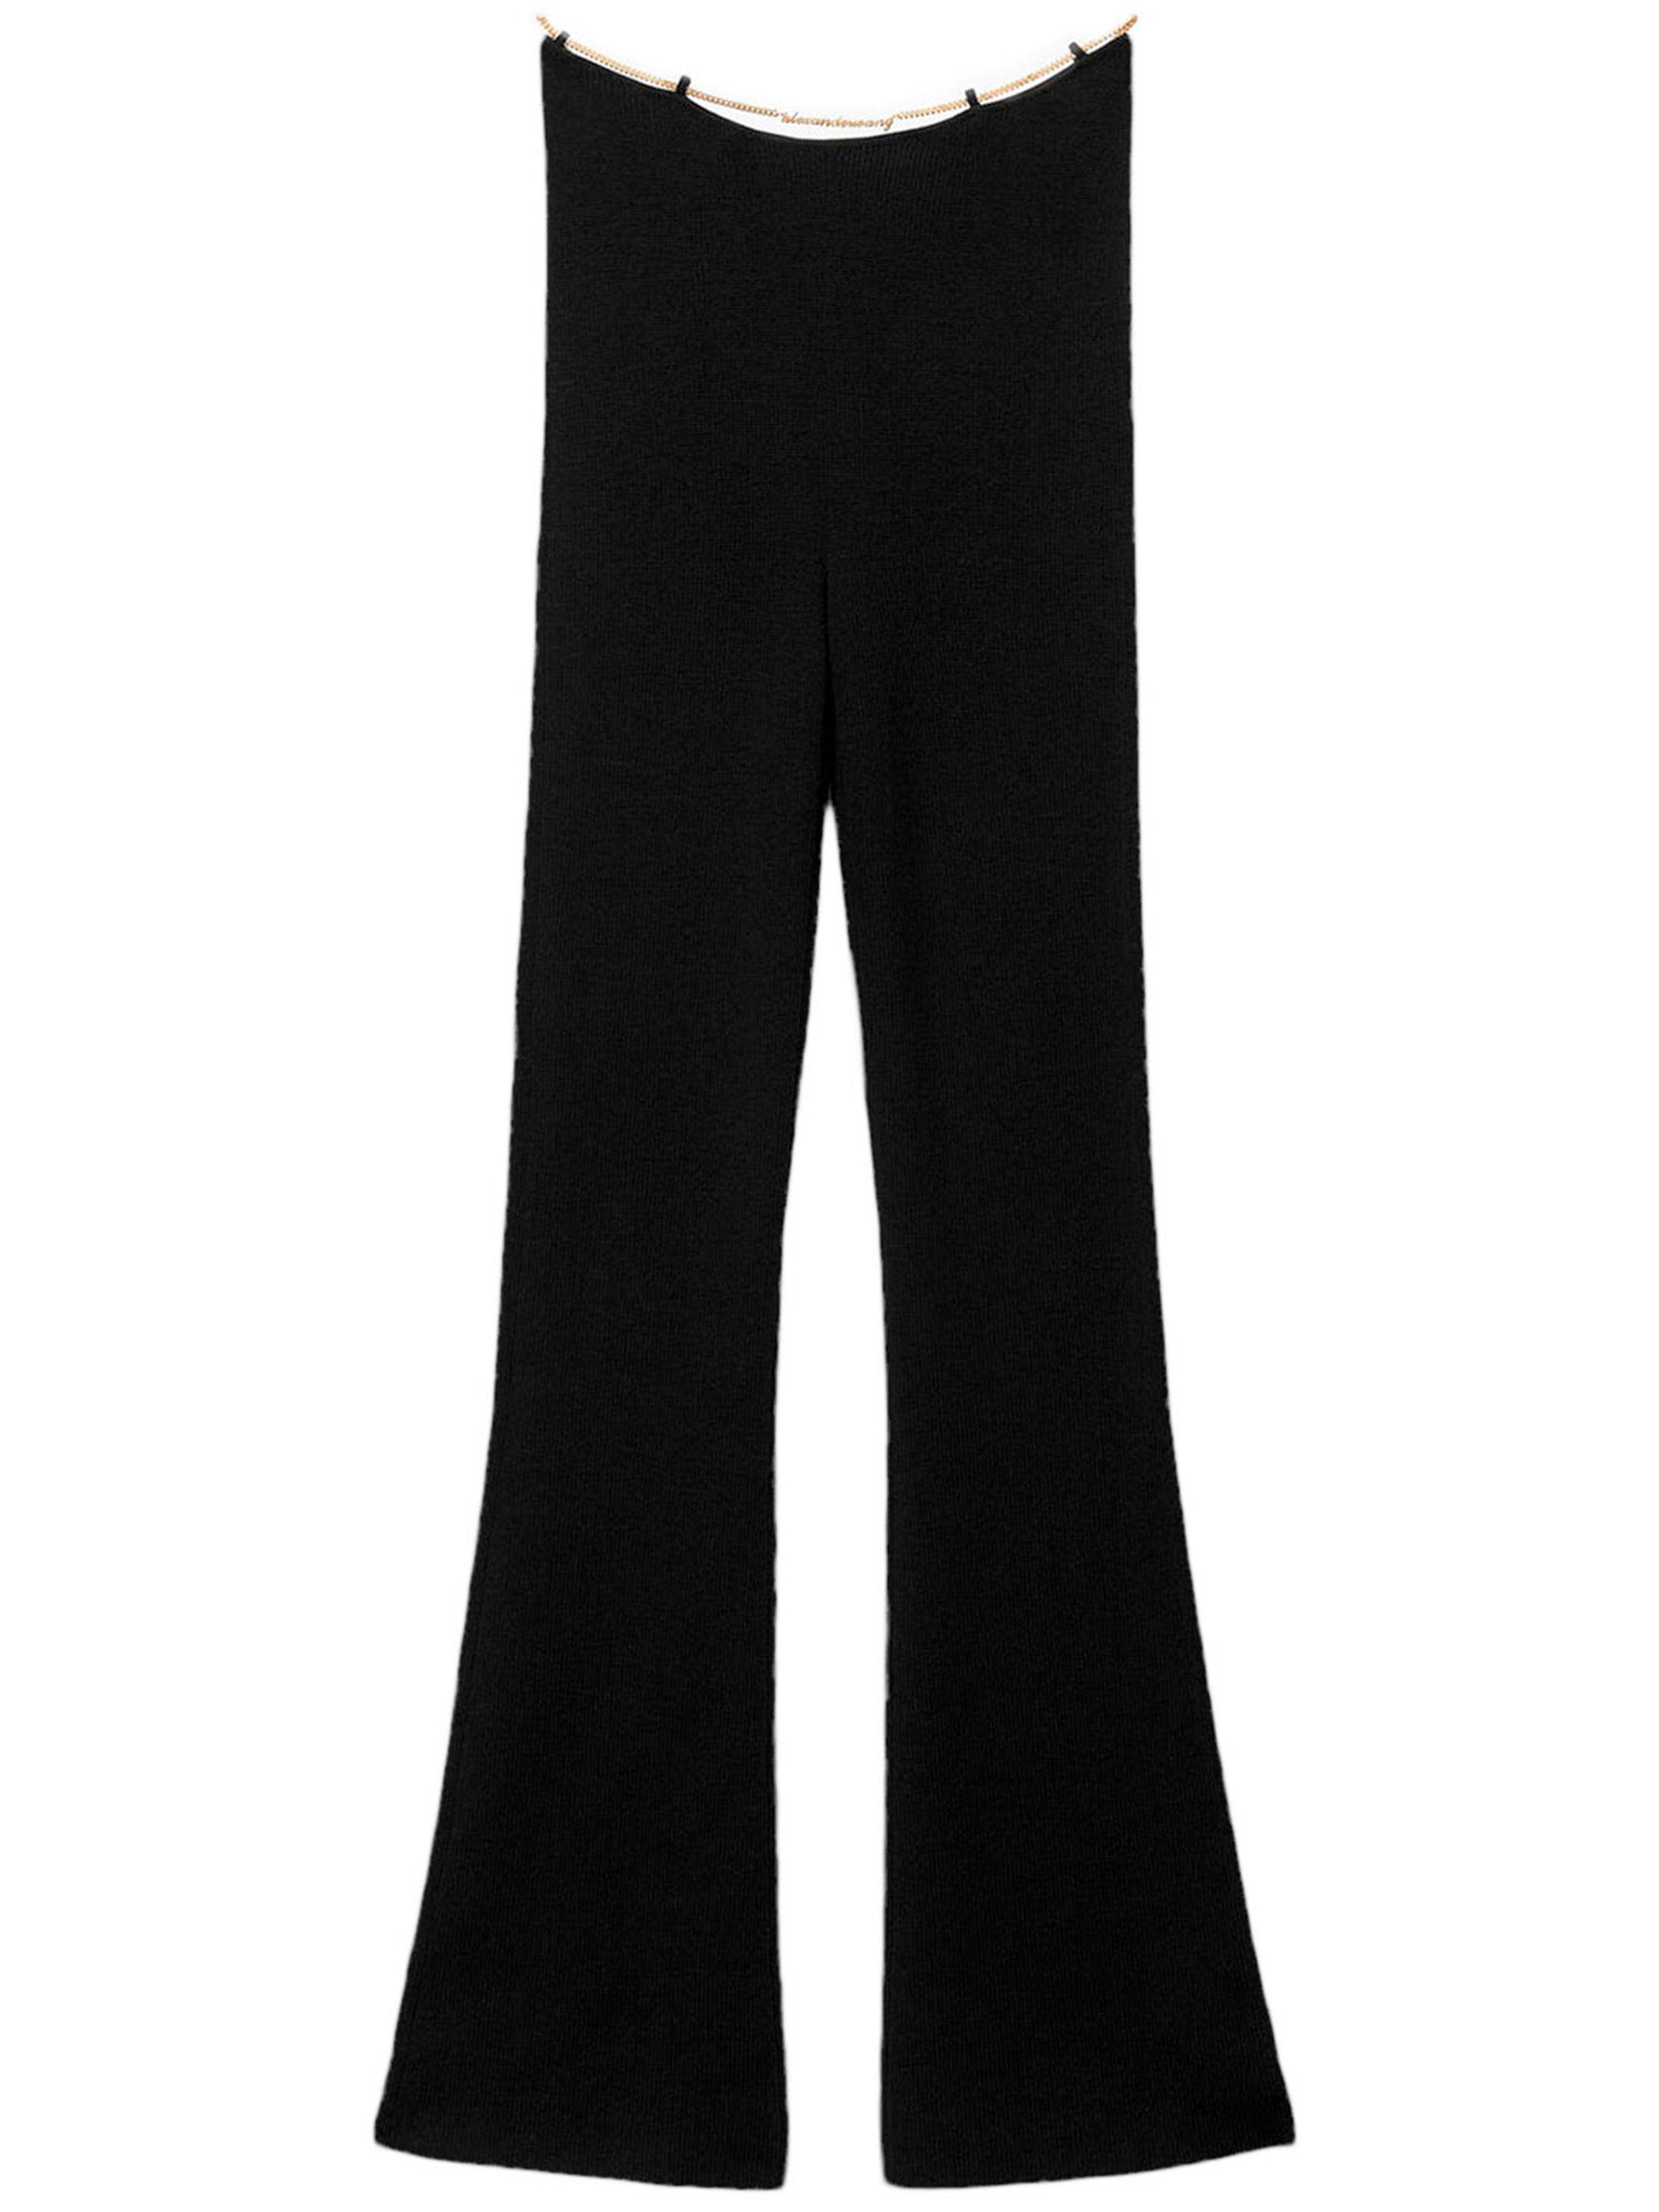 Alexander Wang Merino Wool Bootcut Pants in Black